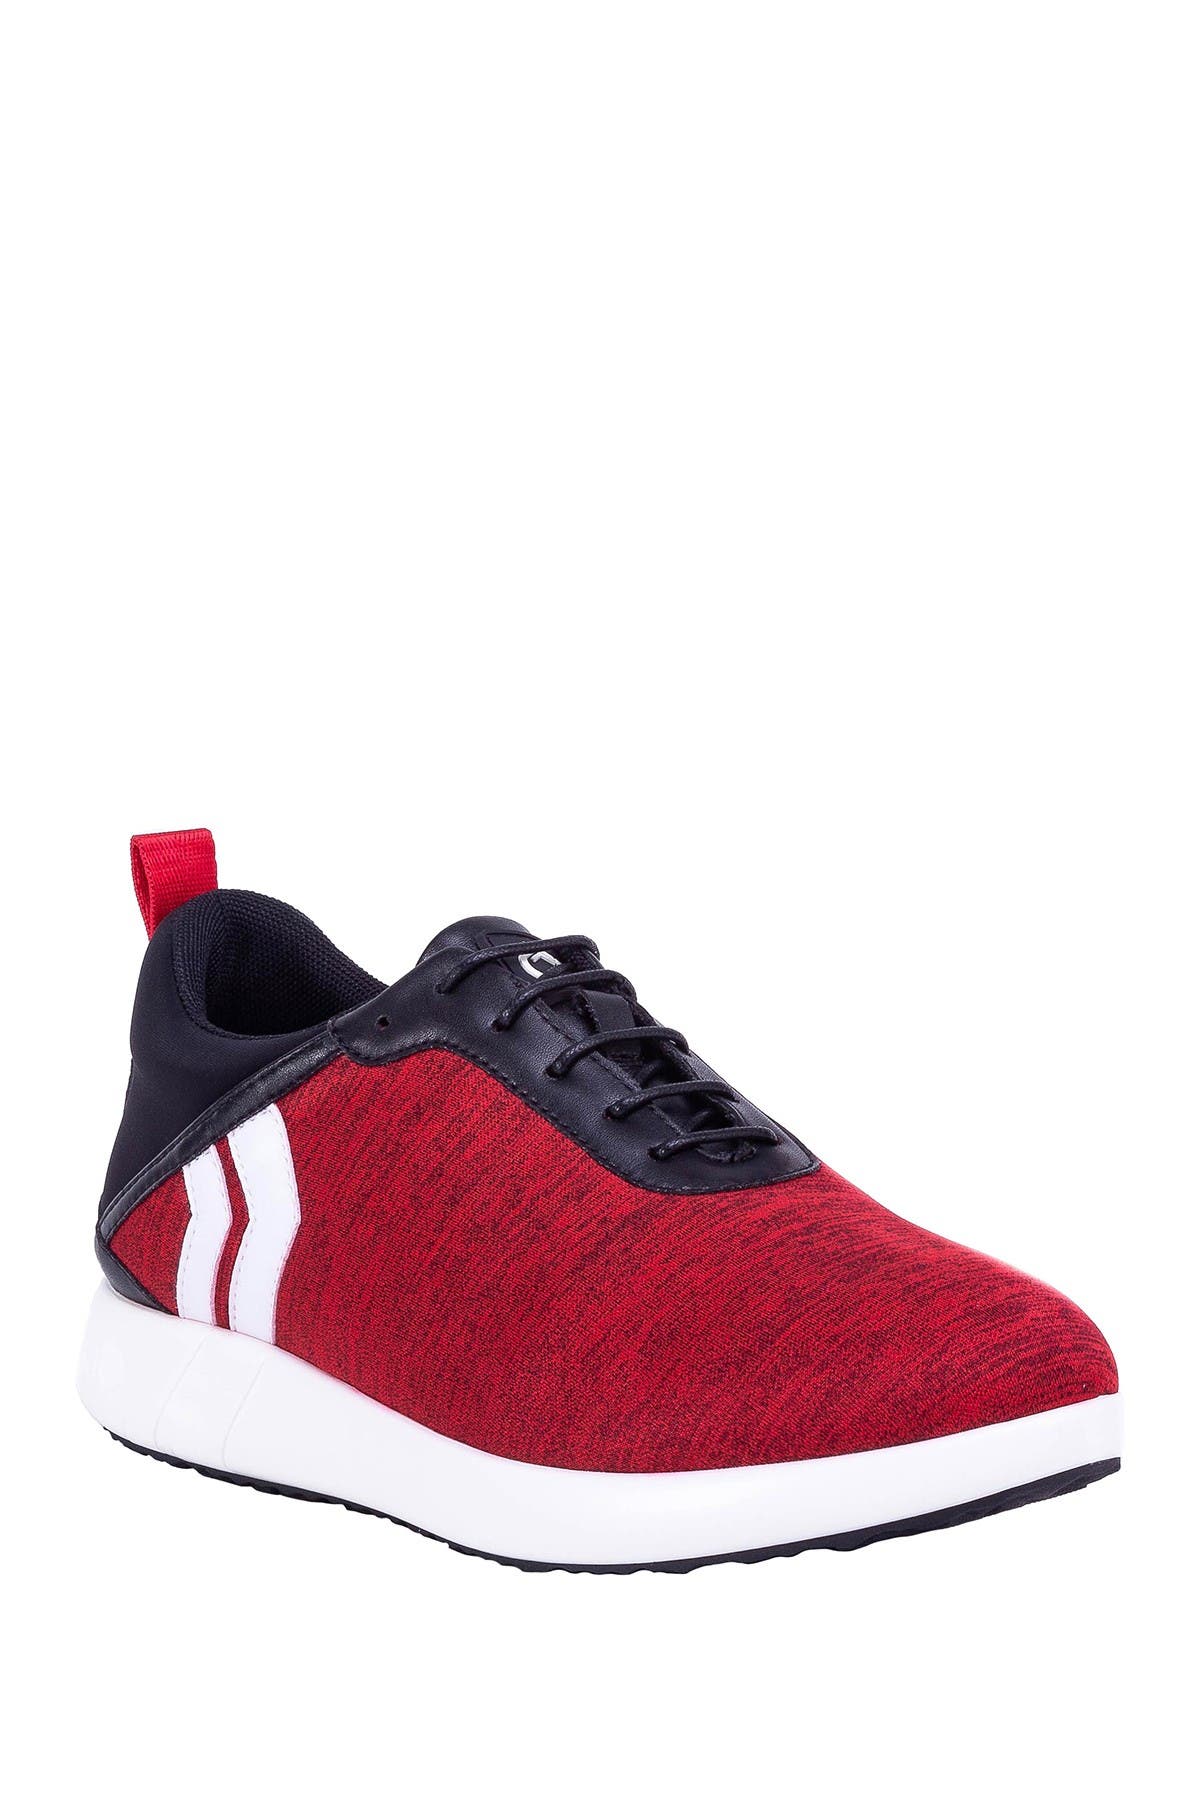 Kicko Avalon Sneaker In Red